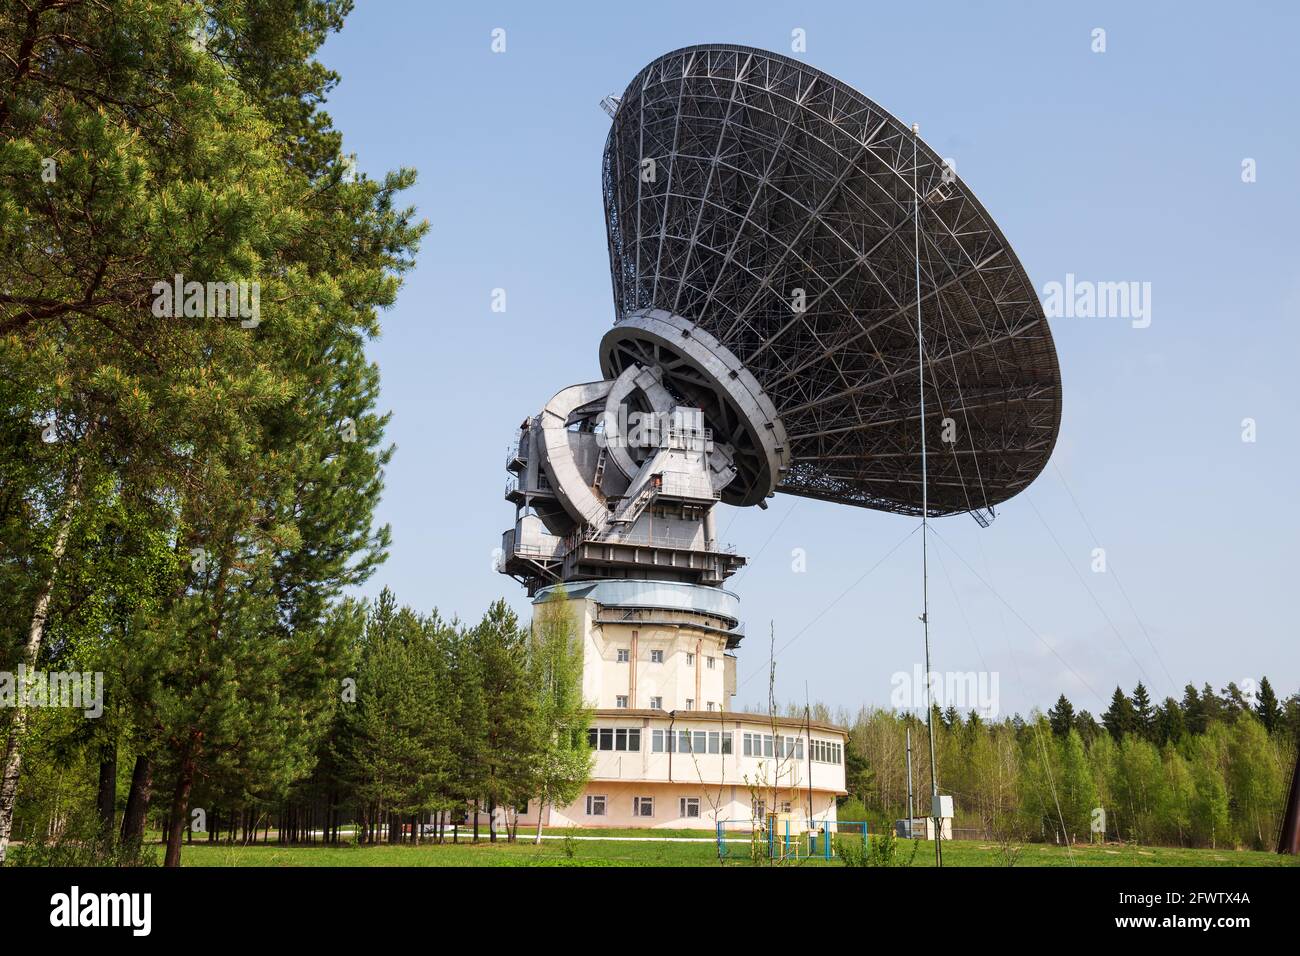 Radiotelescopio RT-64 (TNA-1500) presso l'Osservatorio radio Astronomico Kalyazin, Regione Tver, Russia Foto Stock